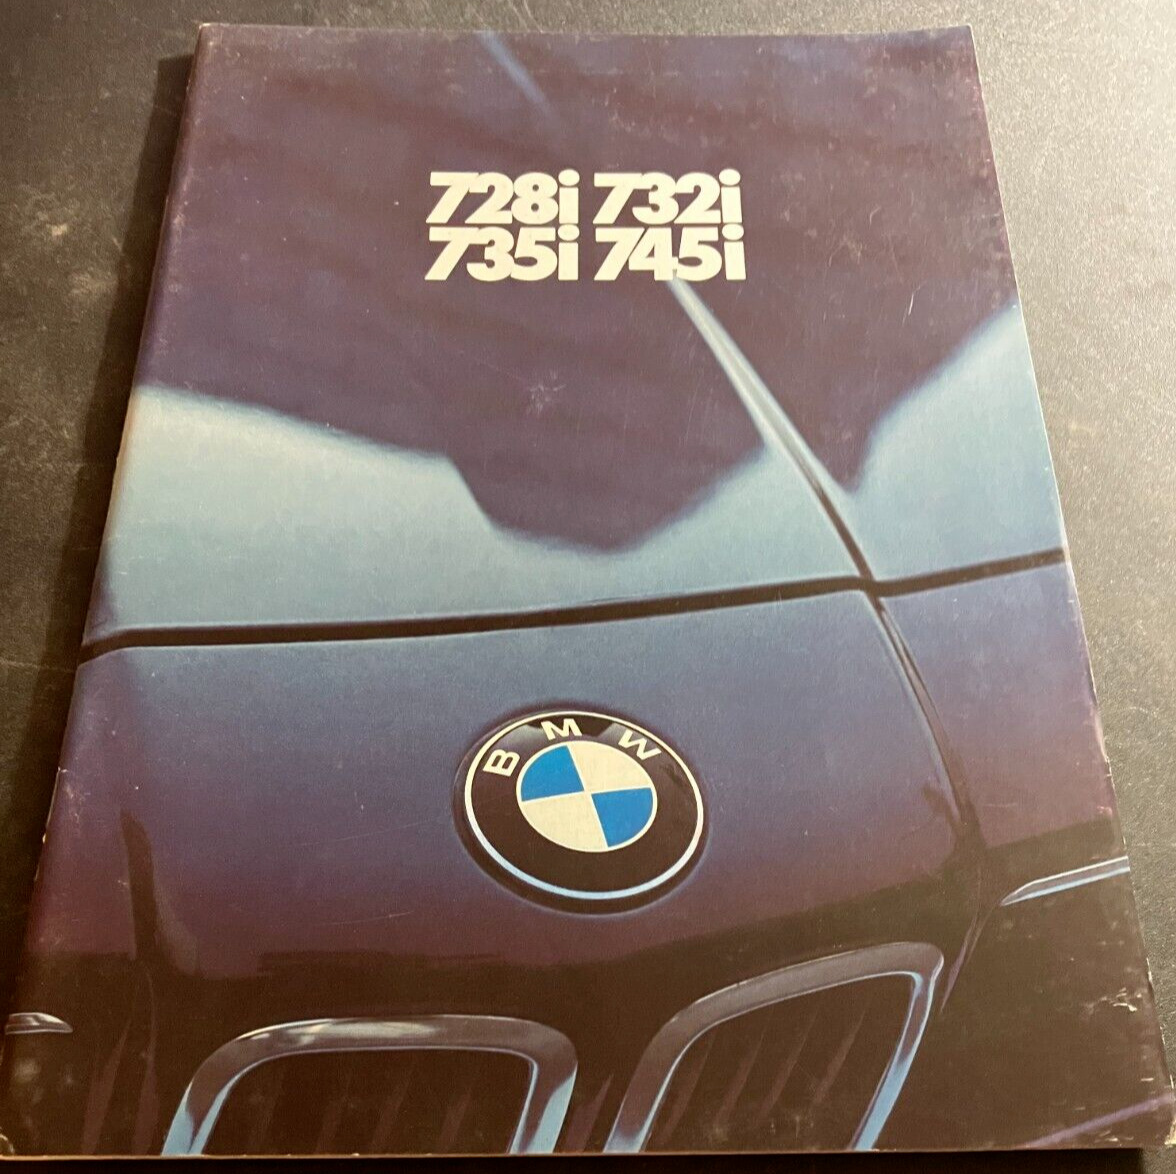 1980 BMW 728i 732i 735i 745i - Vintage 52-page Dealer Sales Brochure - DUTCH